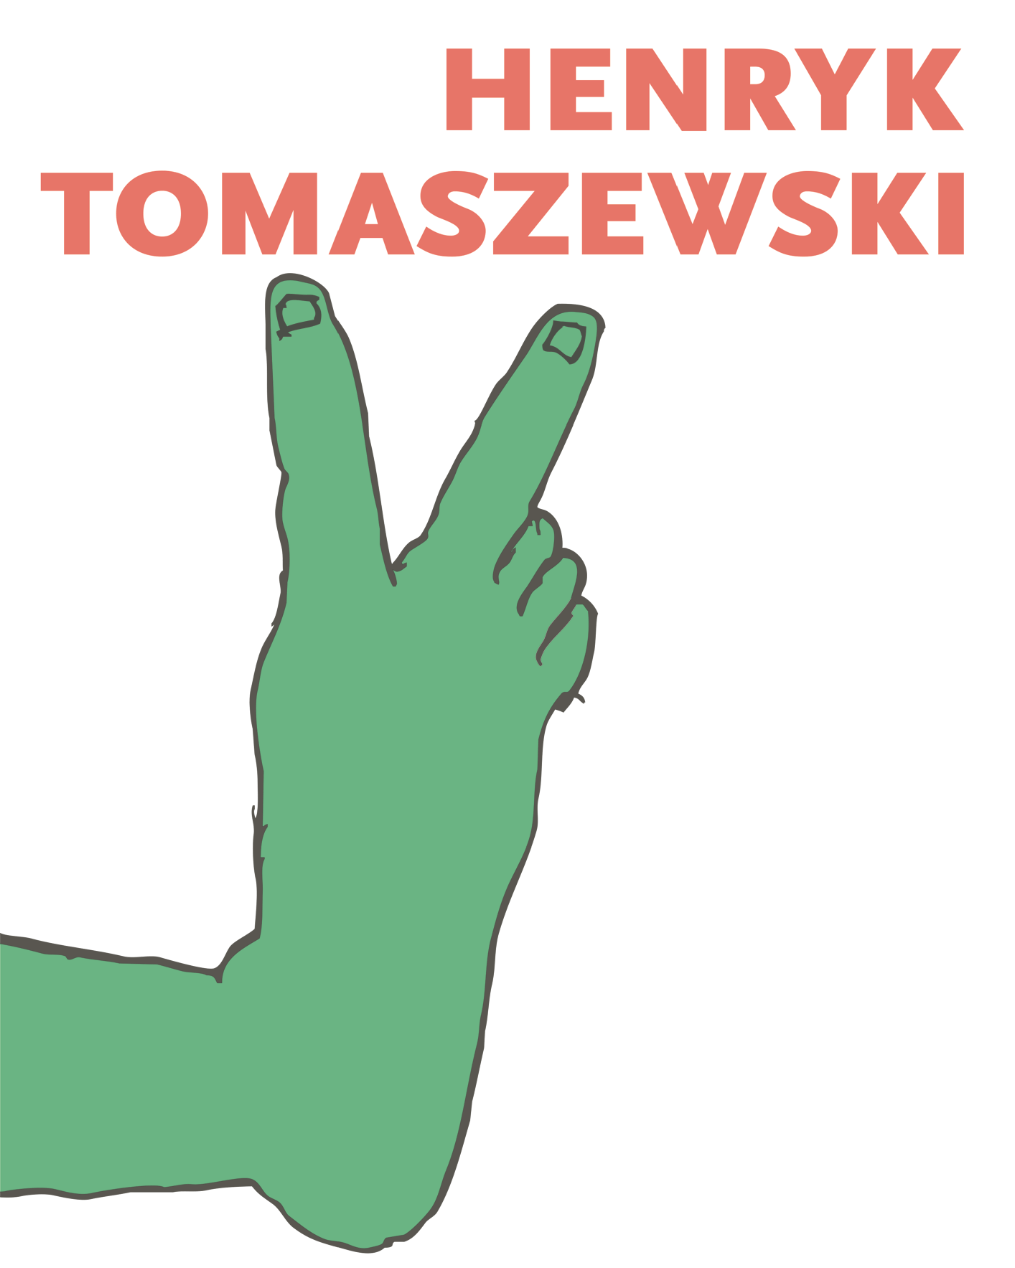 Henryk_Tomaszewski_Designalive6